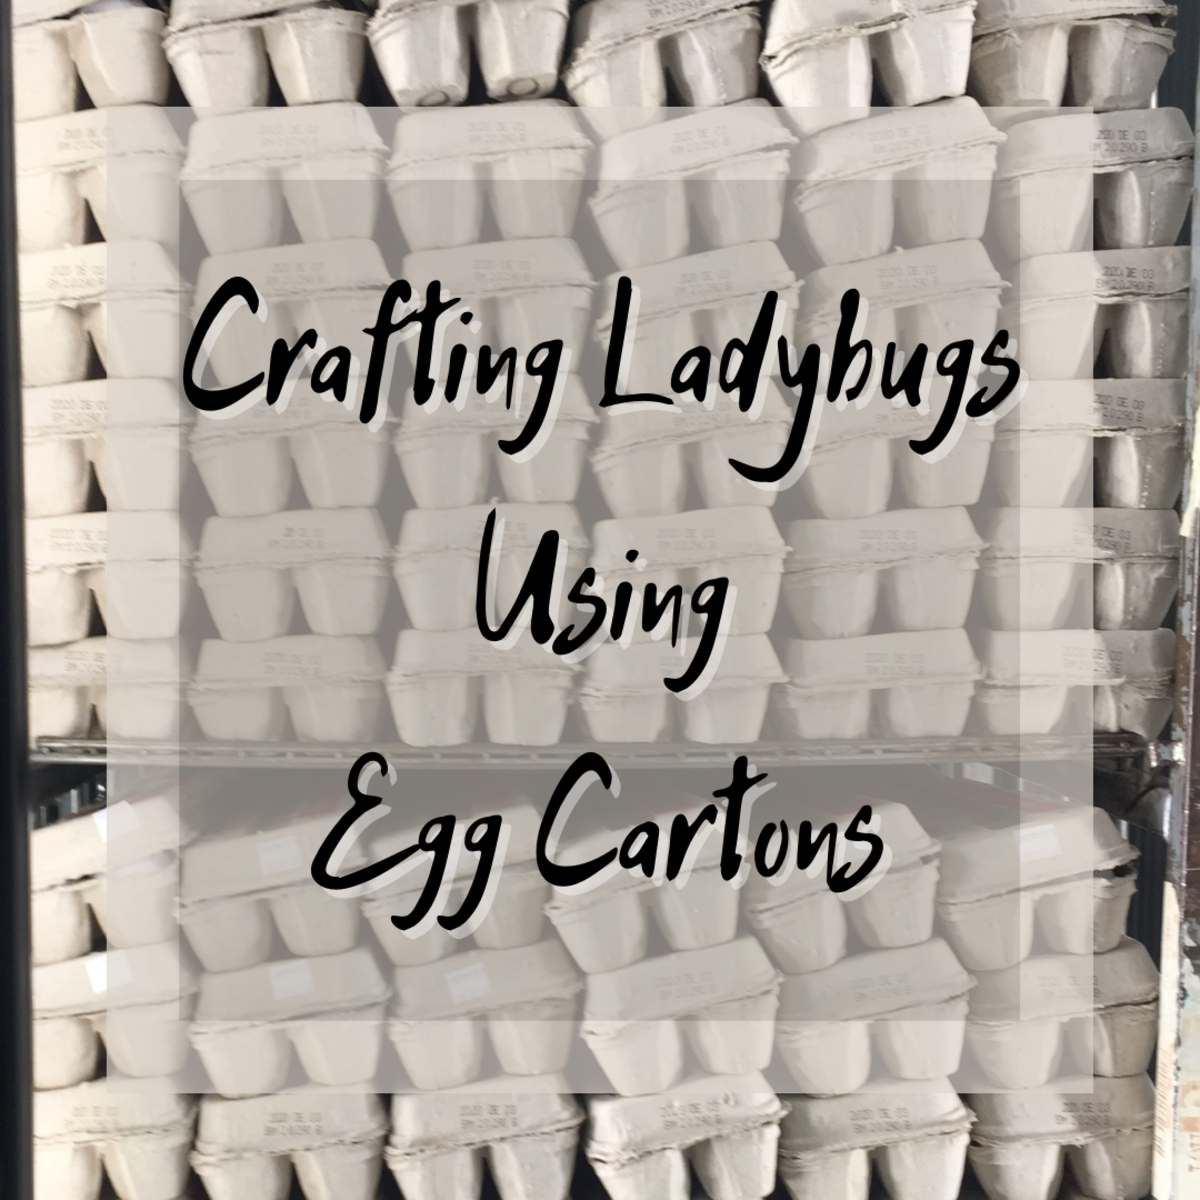 How to Make a Ladybug Craft With Egg Cartons